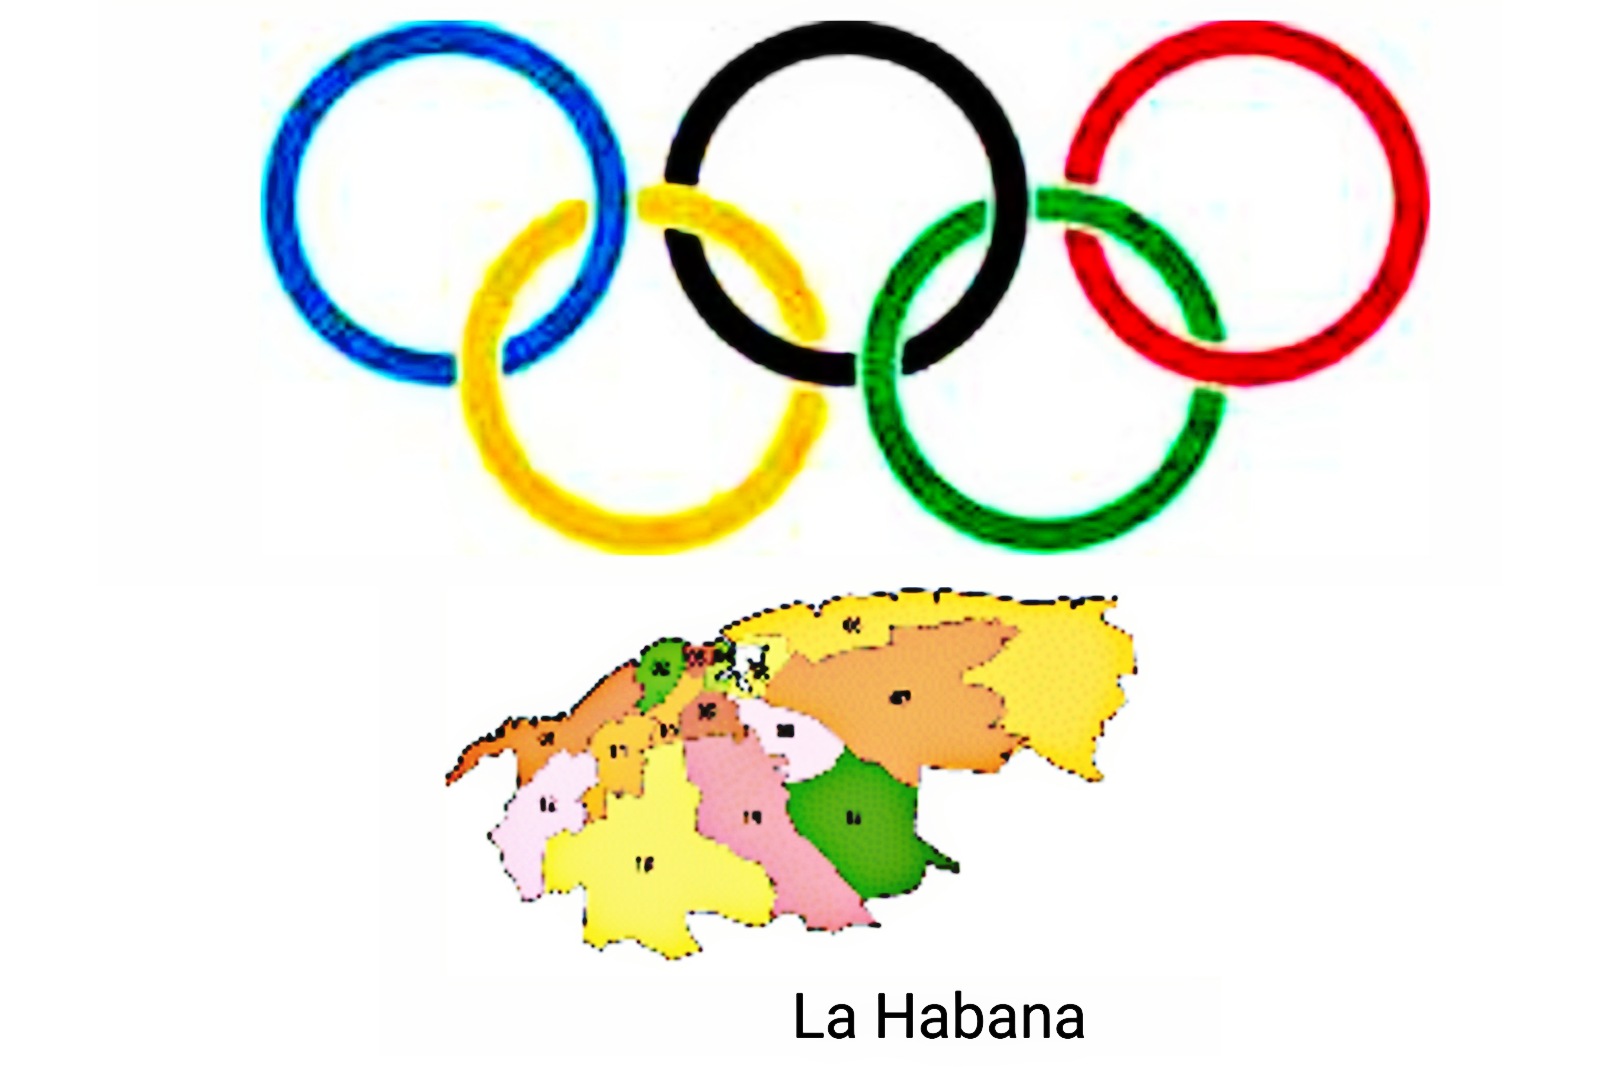 Campeones olímpicos de La Habana 1900 – 2016